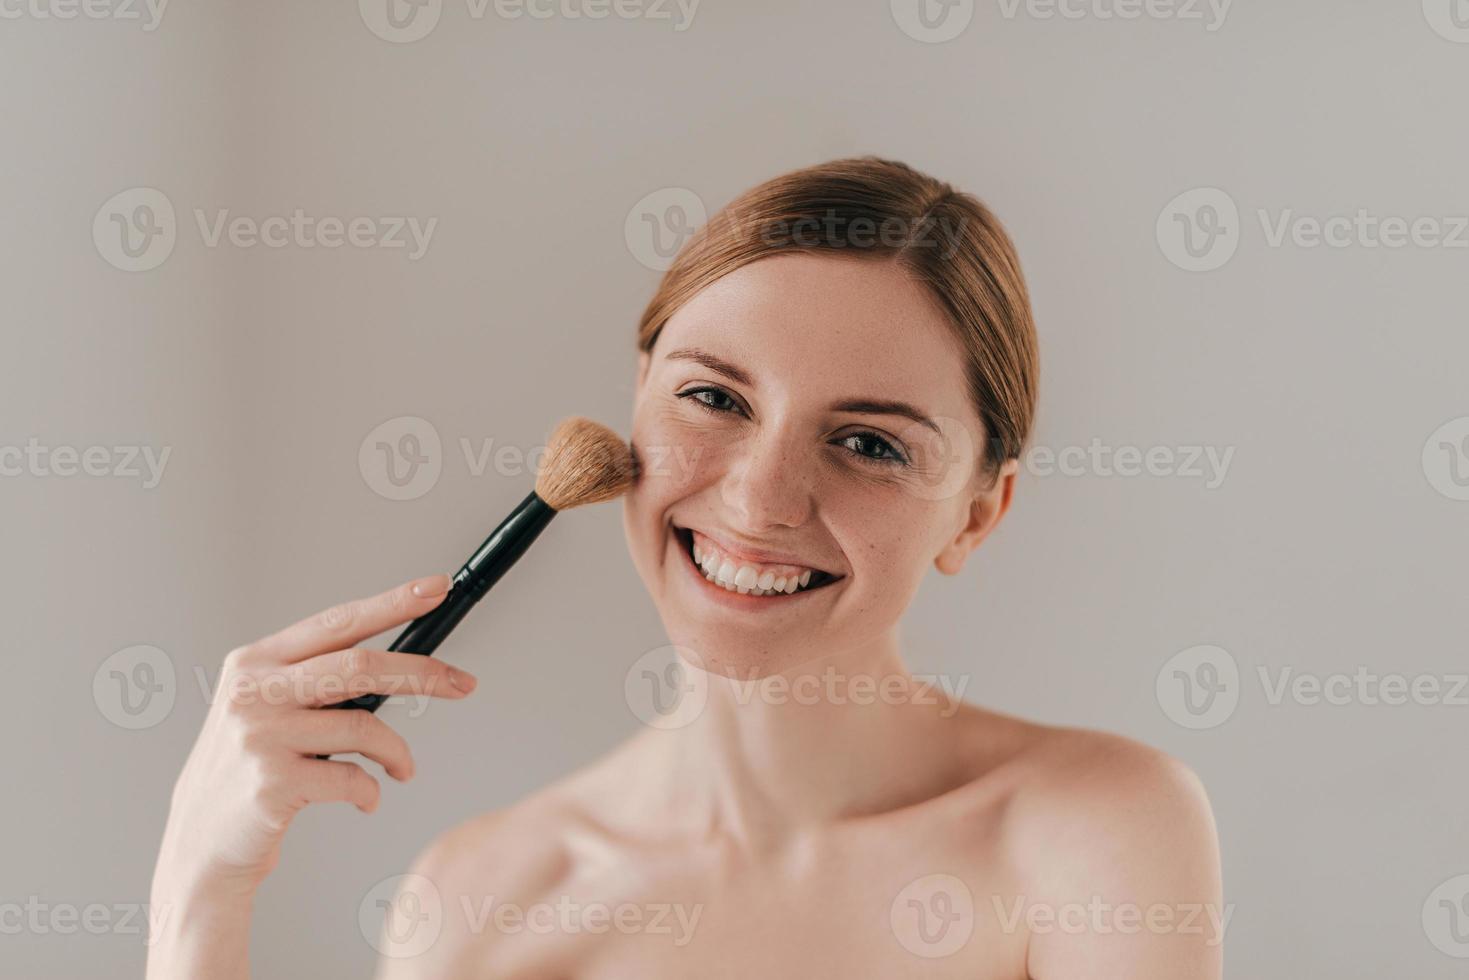 Zeit für sich. Schöne junge Frau mit Sommersprossen im Gesicht, die einen Make-up-Pinsel hält und in die Kamera schaut, während sie vor dem Hintergrund steht foto